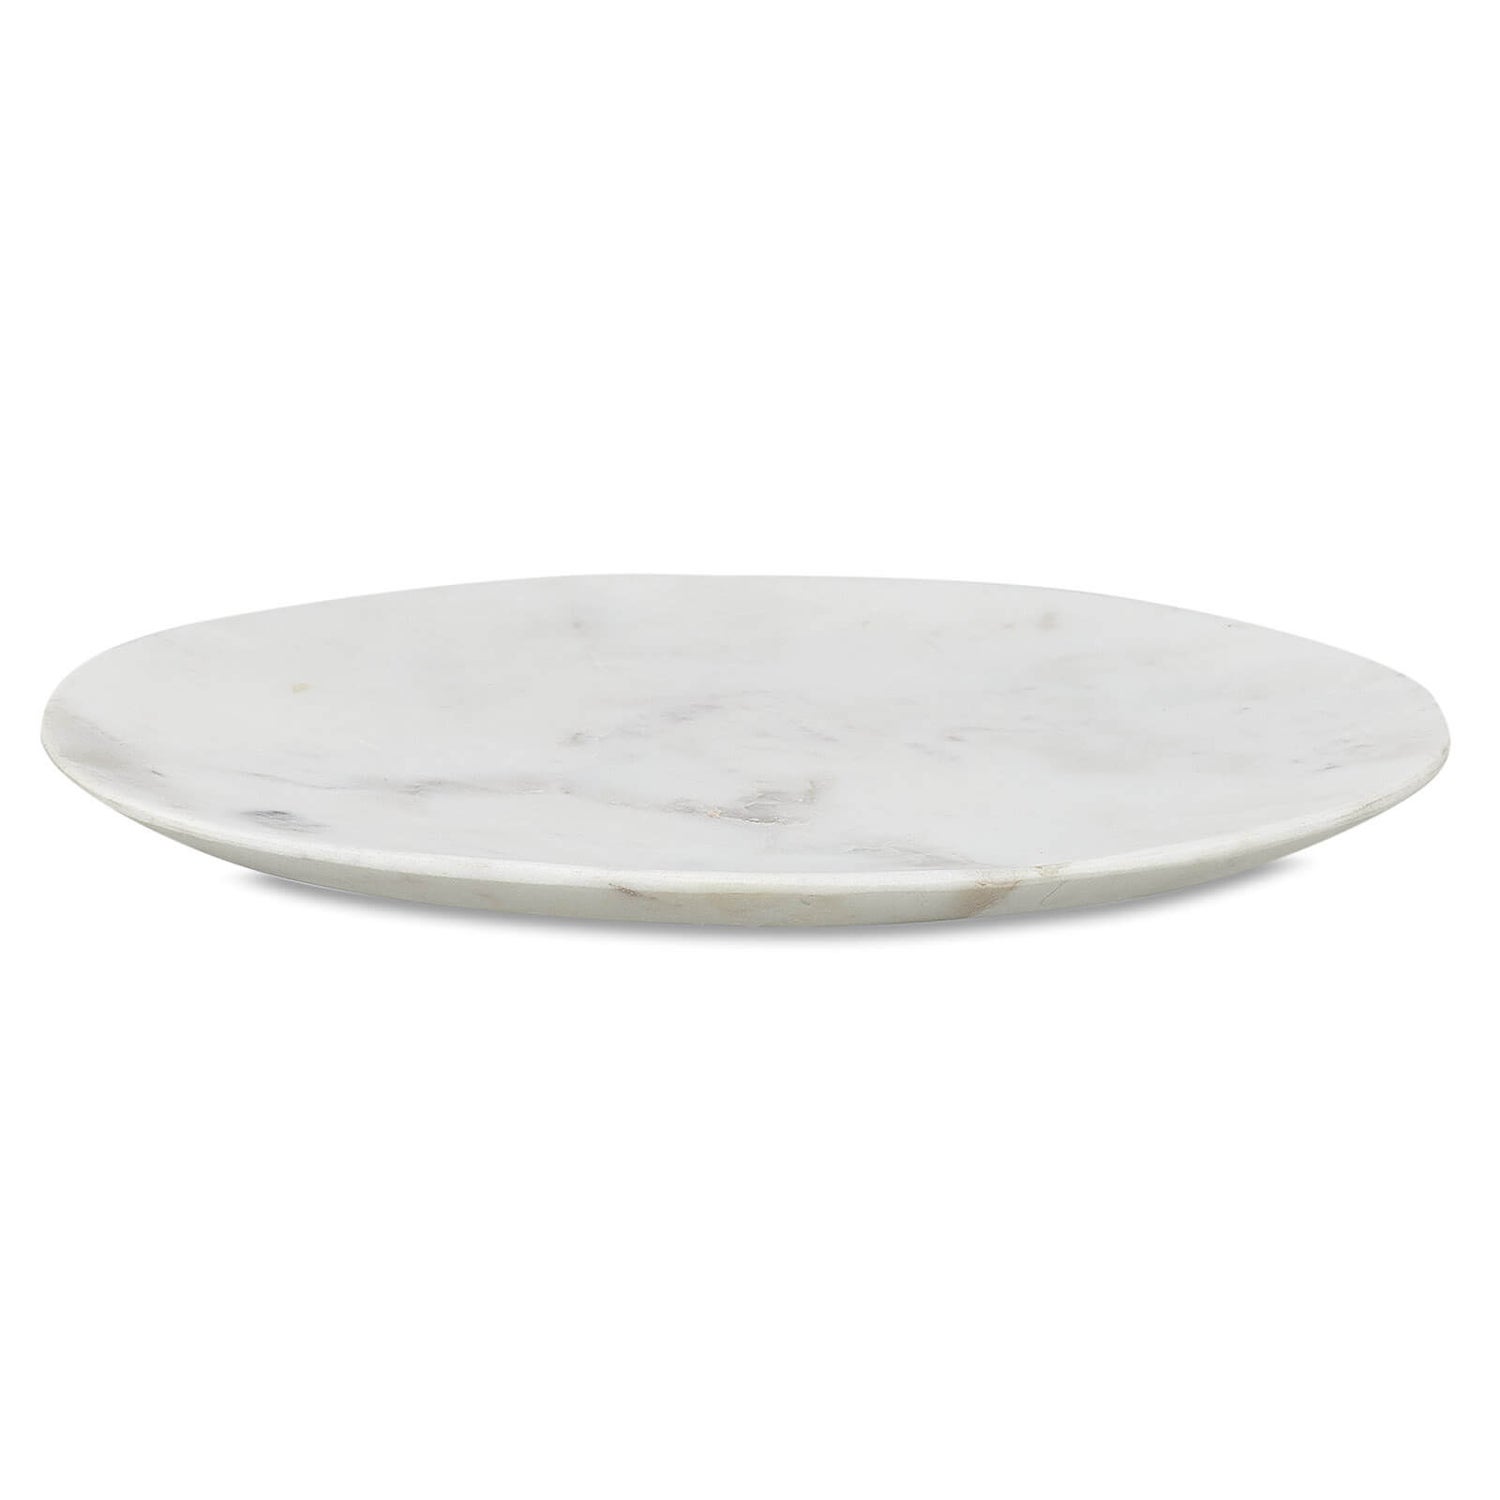 Nkuku Arjun Marble Plate - Small